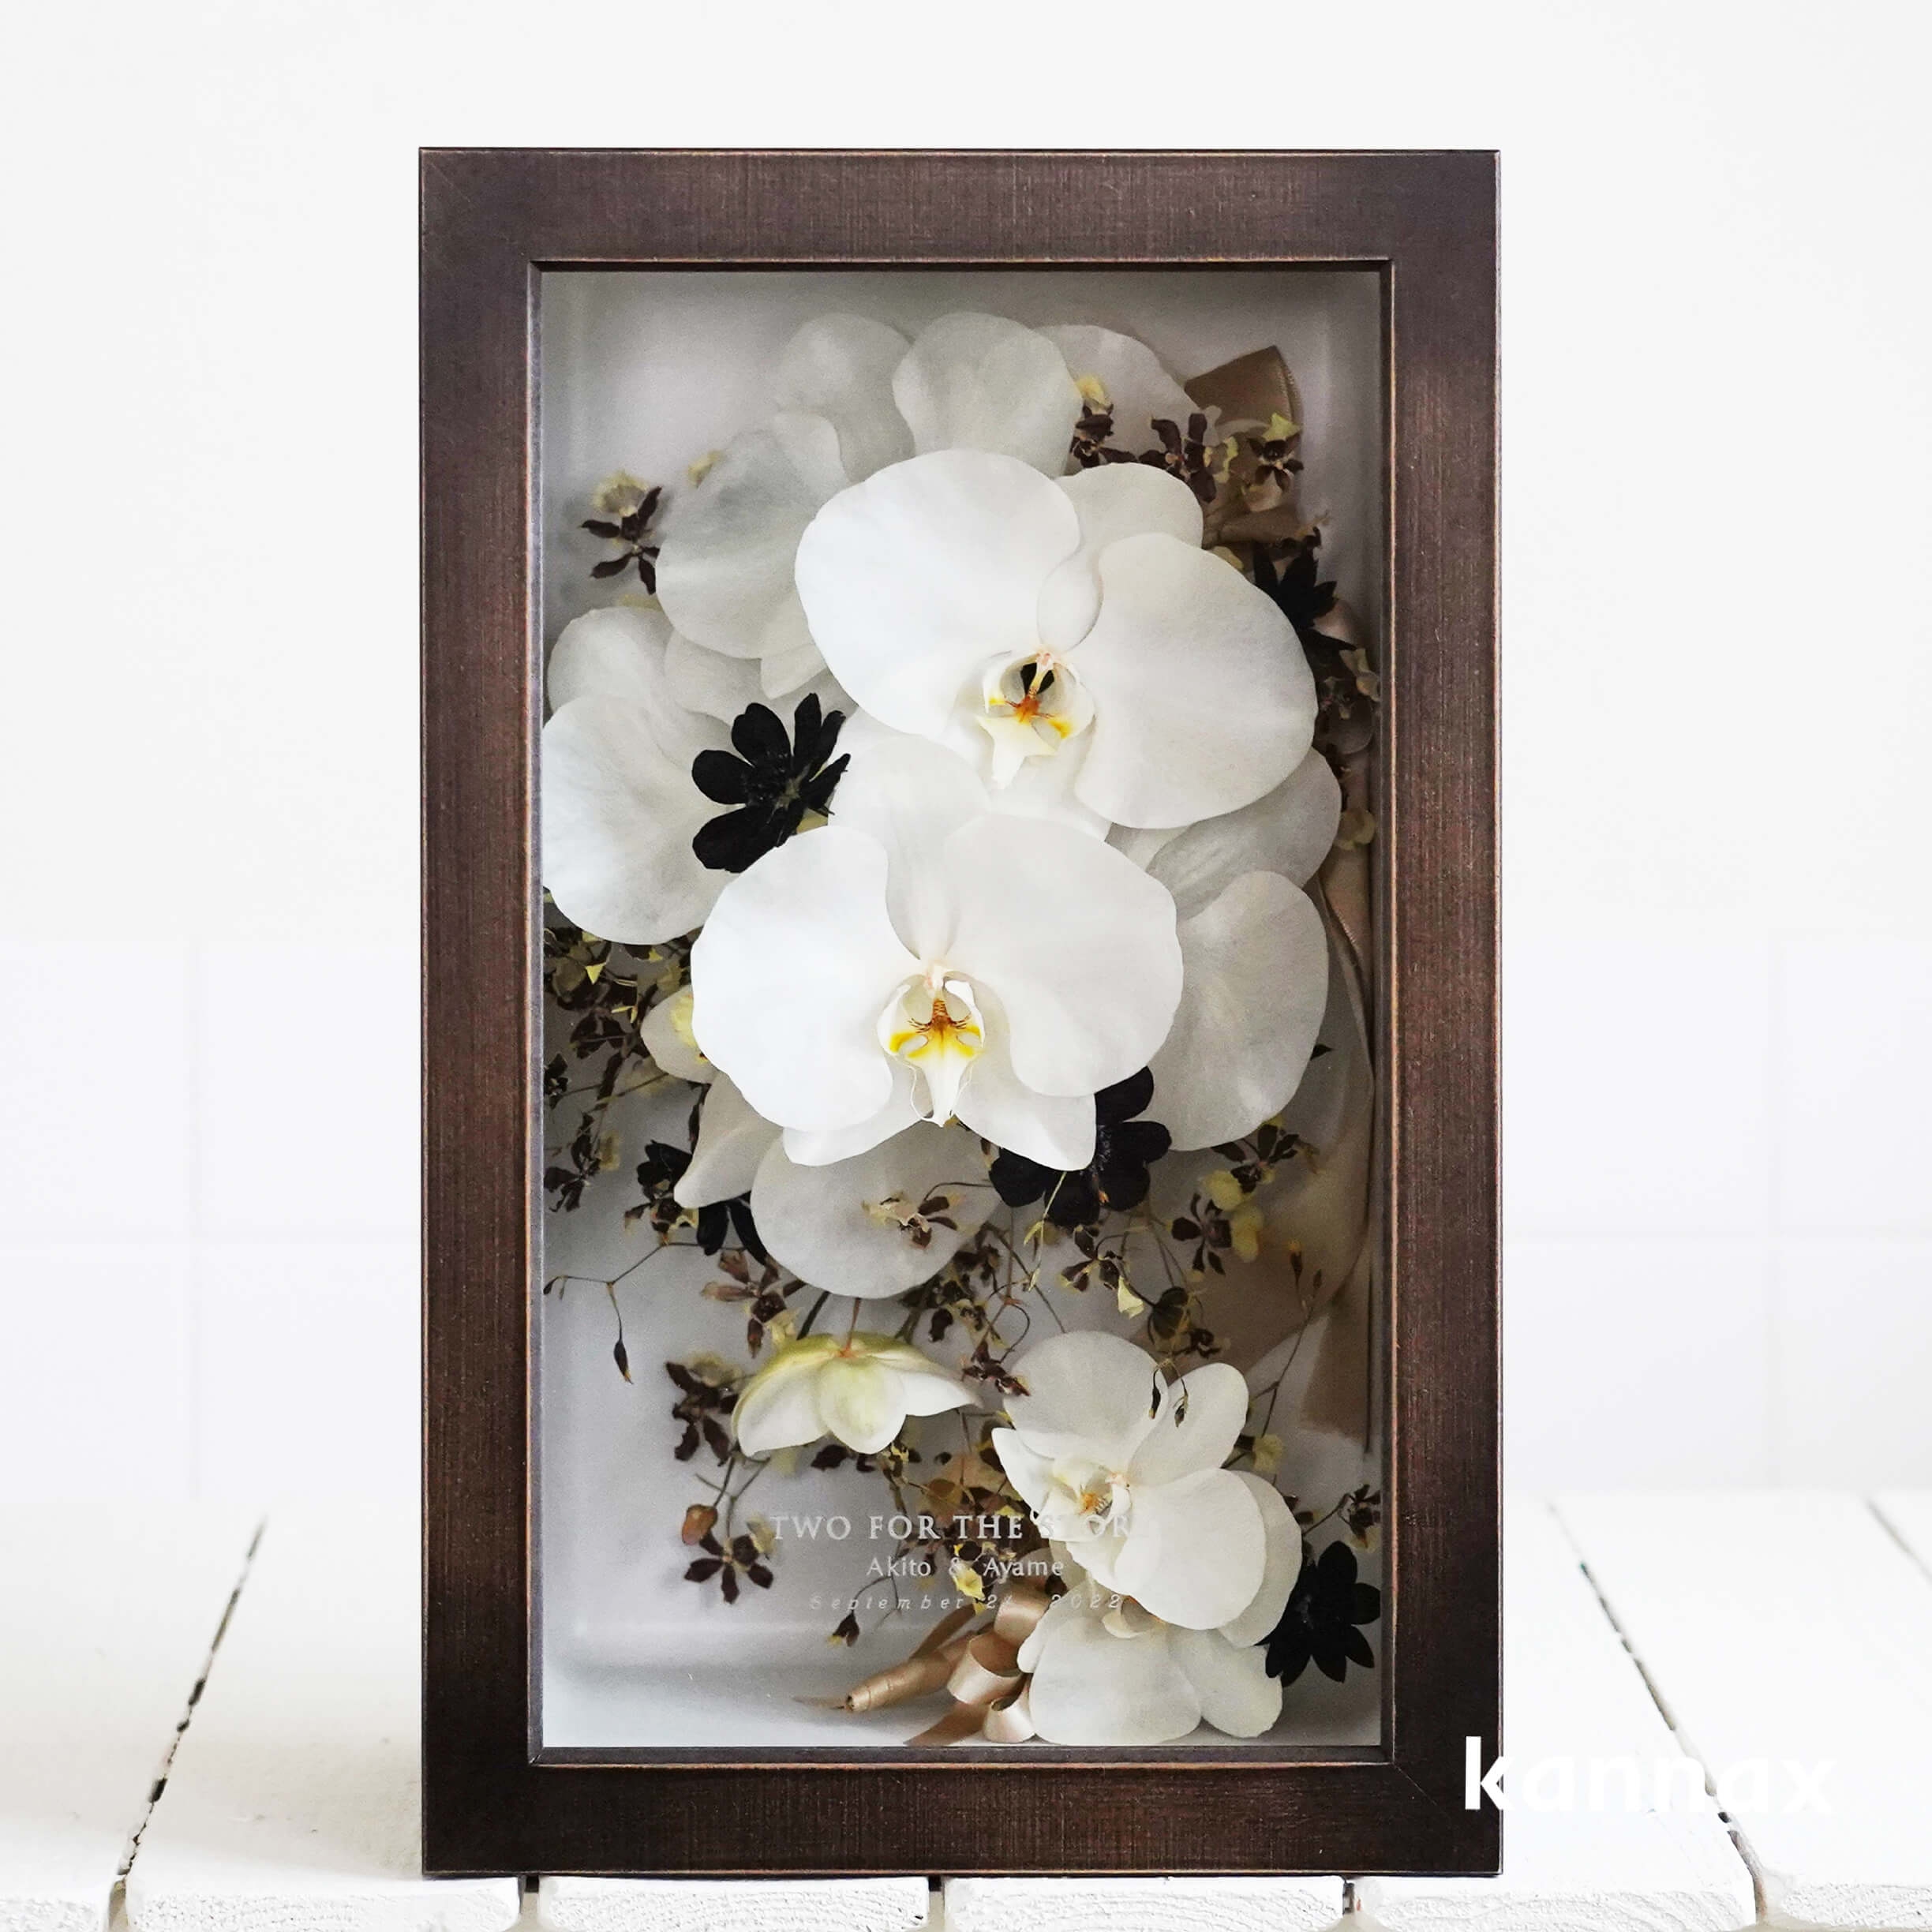 NEW得価最低落札価格設定ベーシックフラワー６つ花キャビネットプレート　チューリップとケシの花を中心に１級品 マイセン